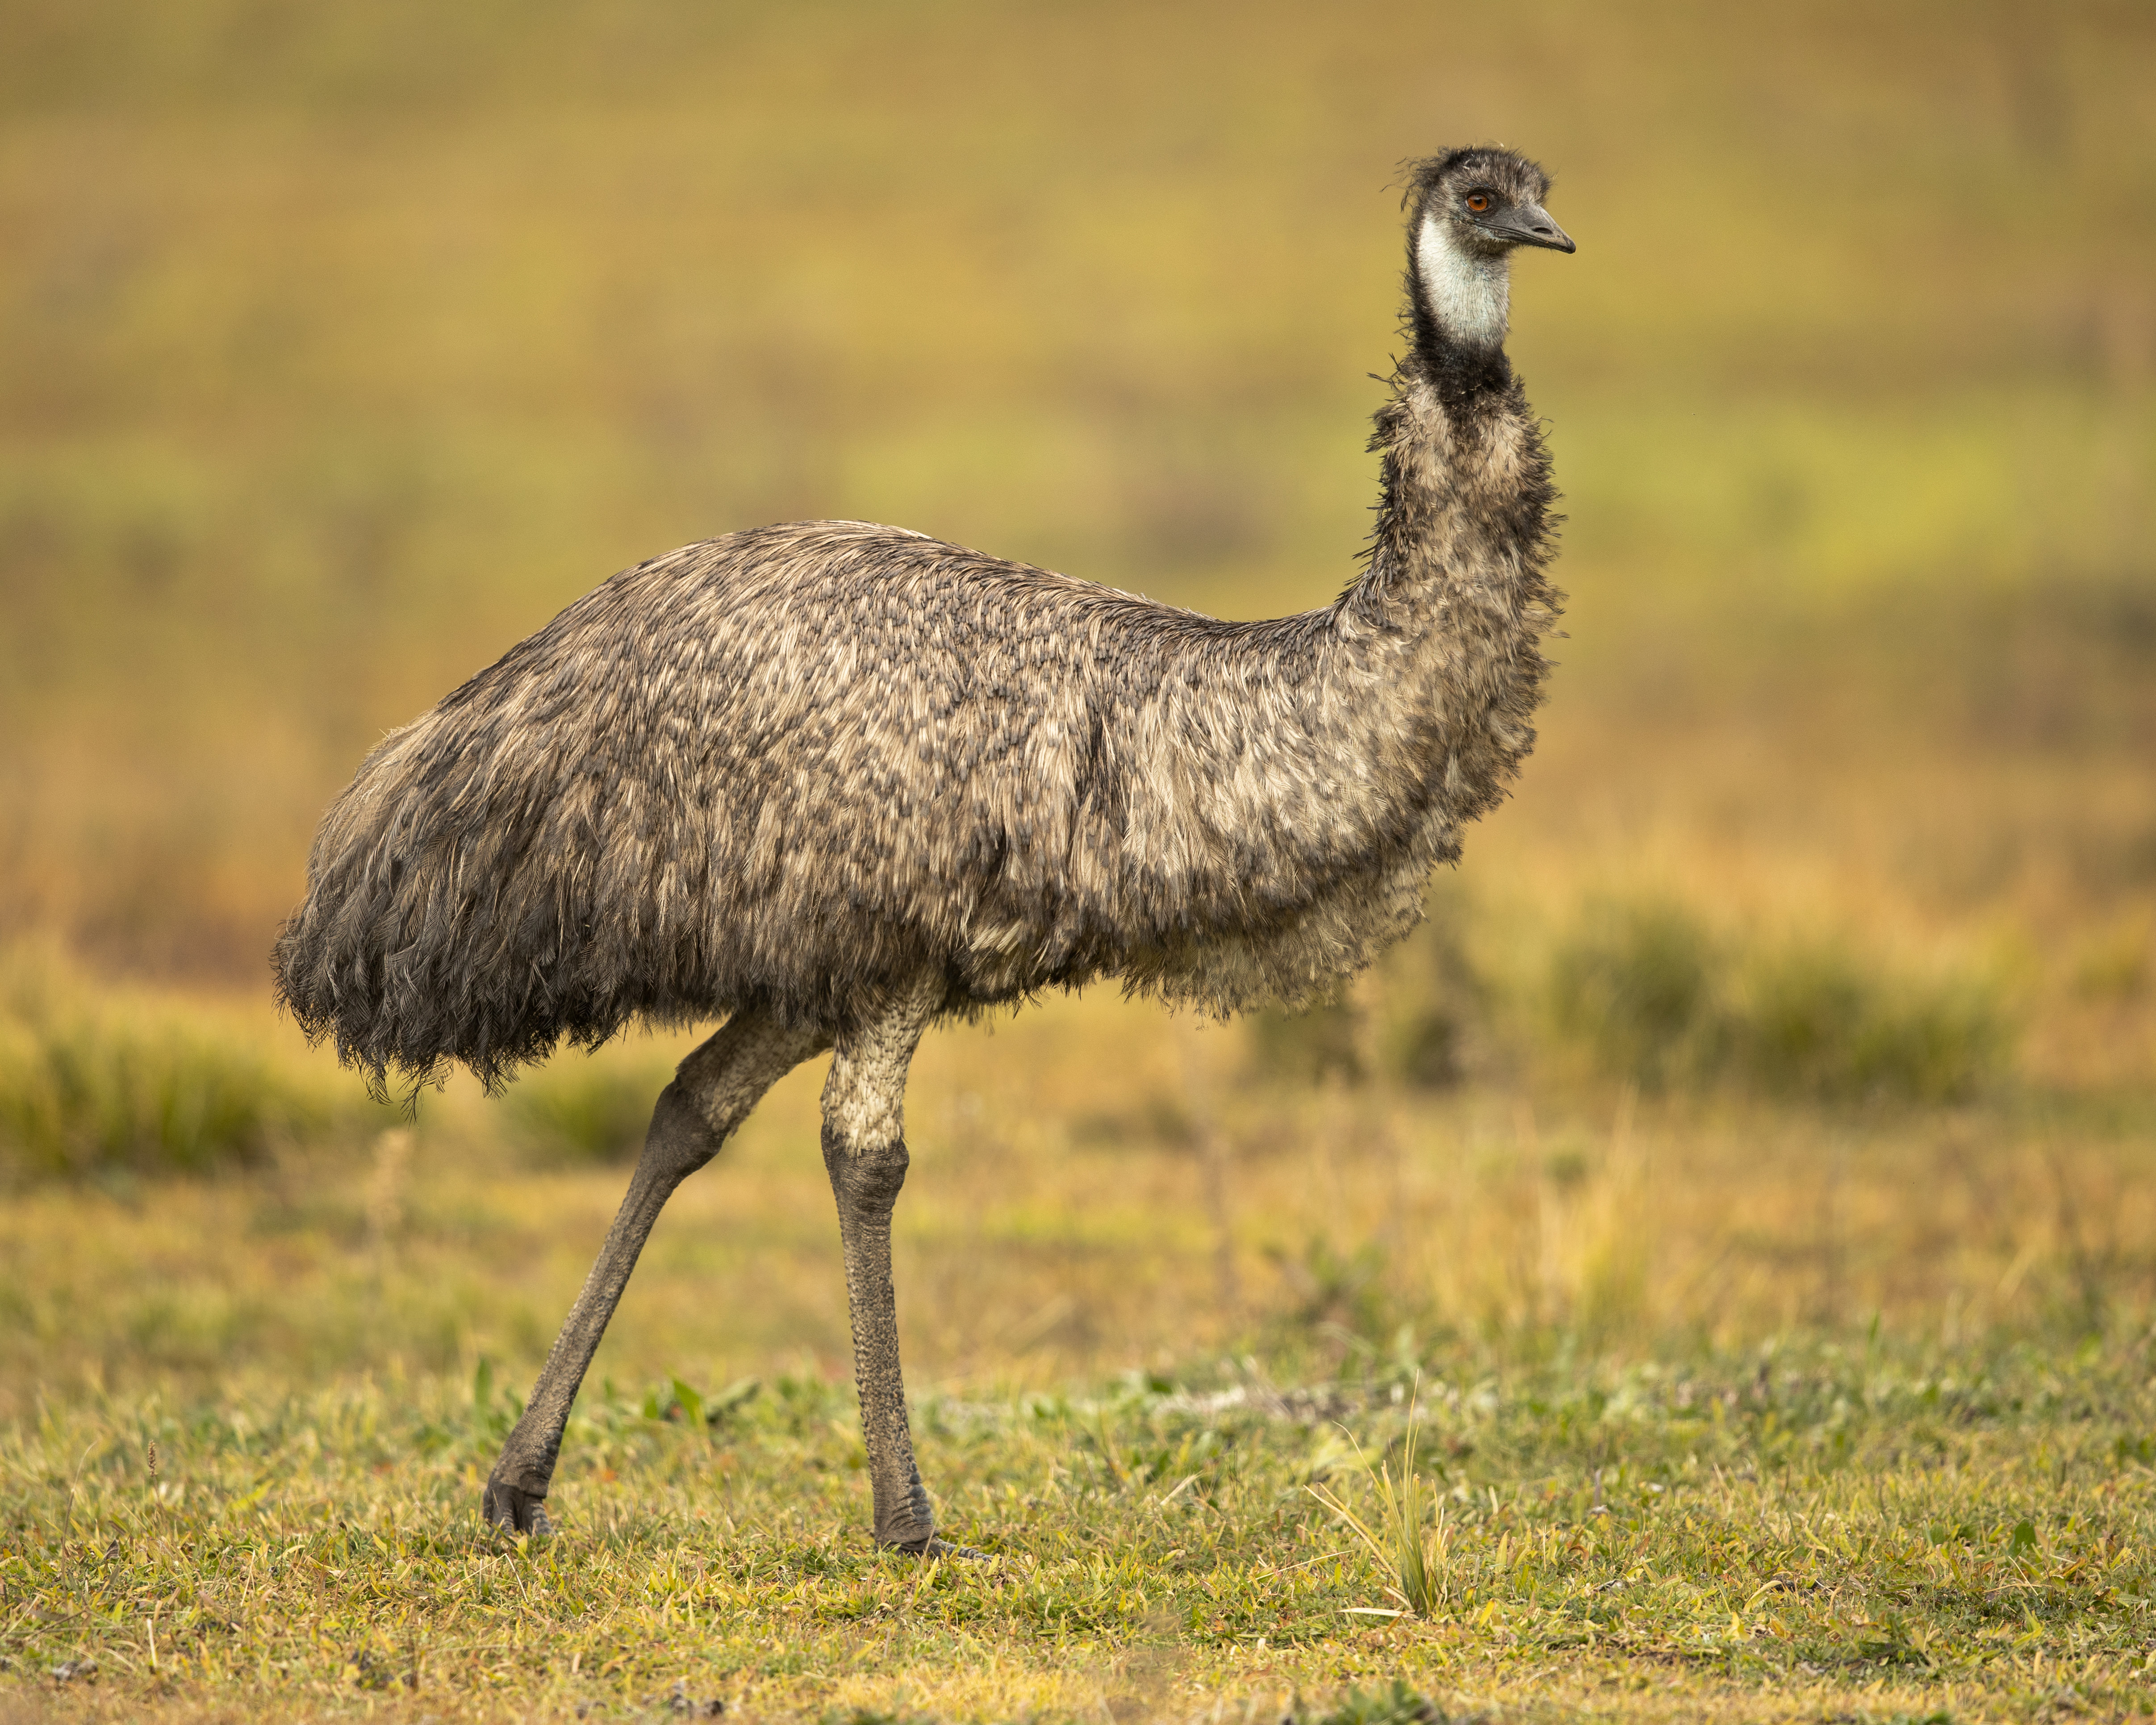 Why is an emu a bird?